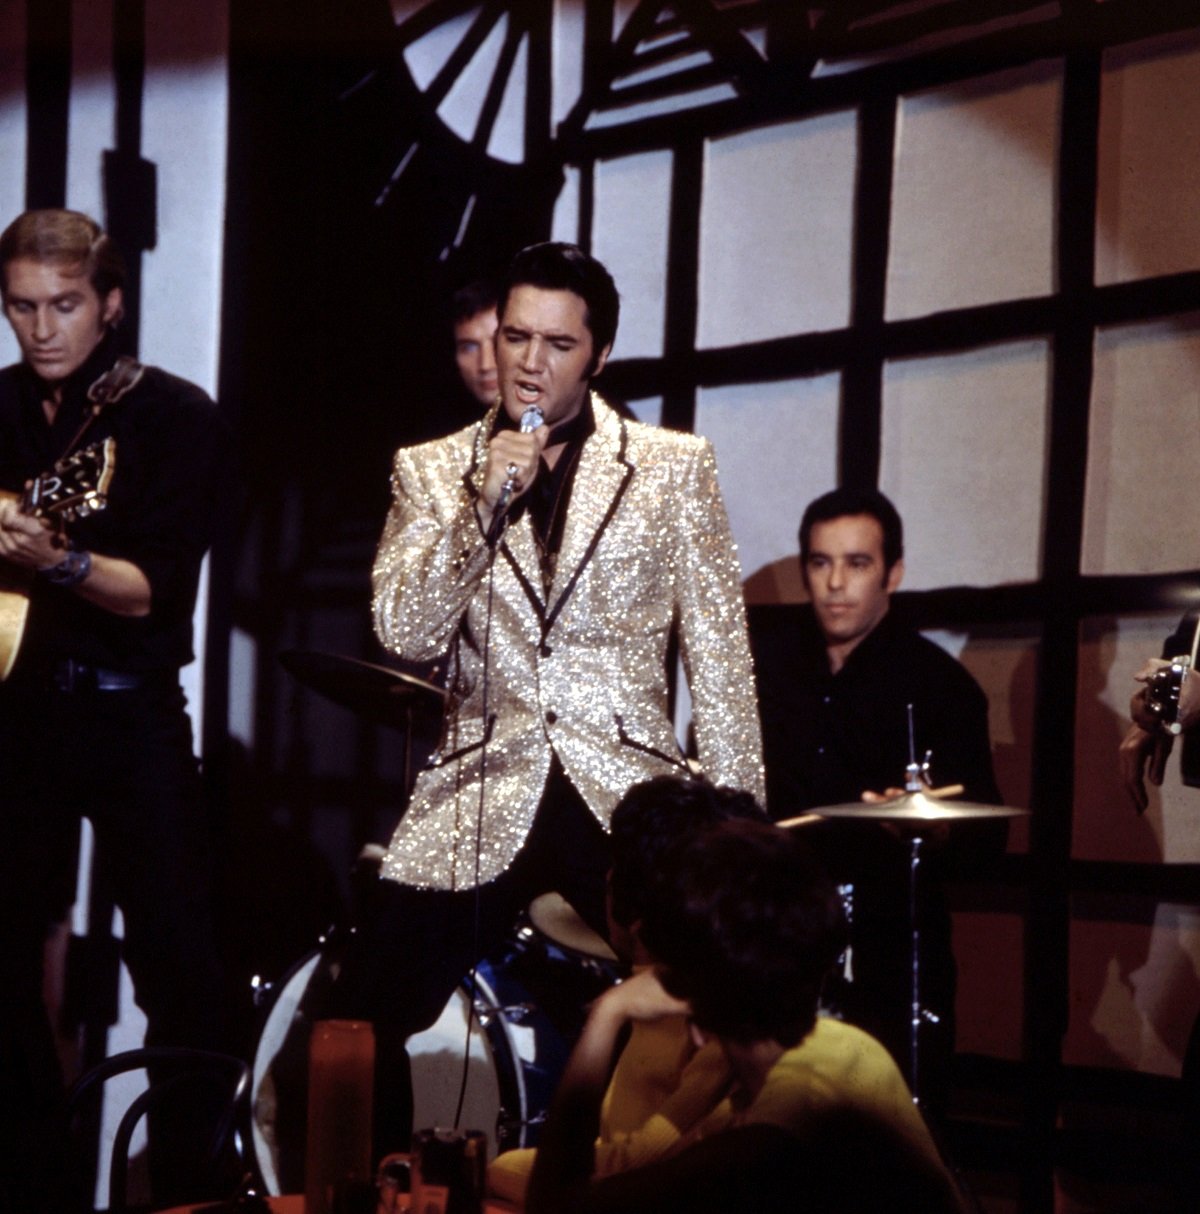 Elvis Presley performing in 1968